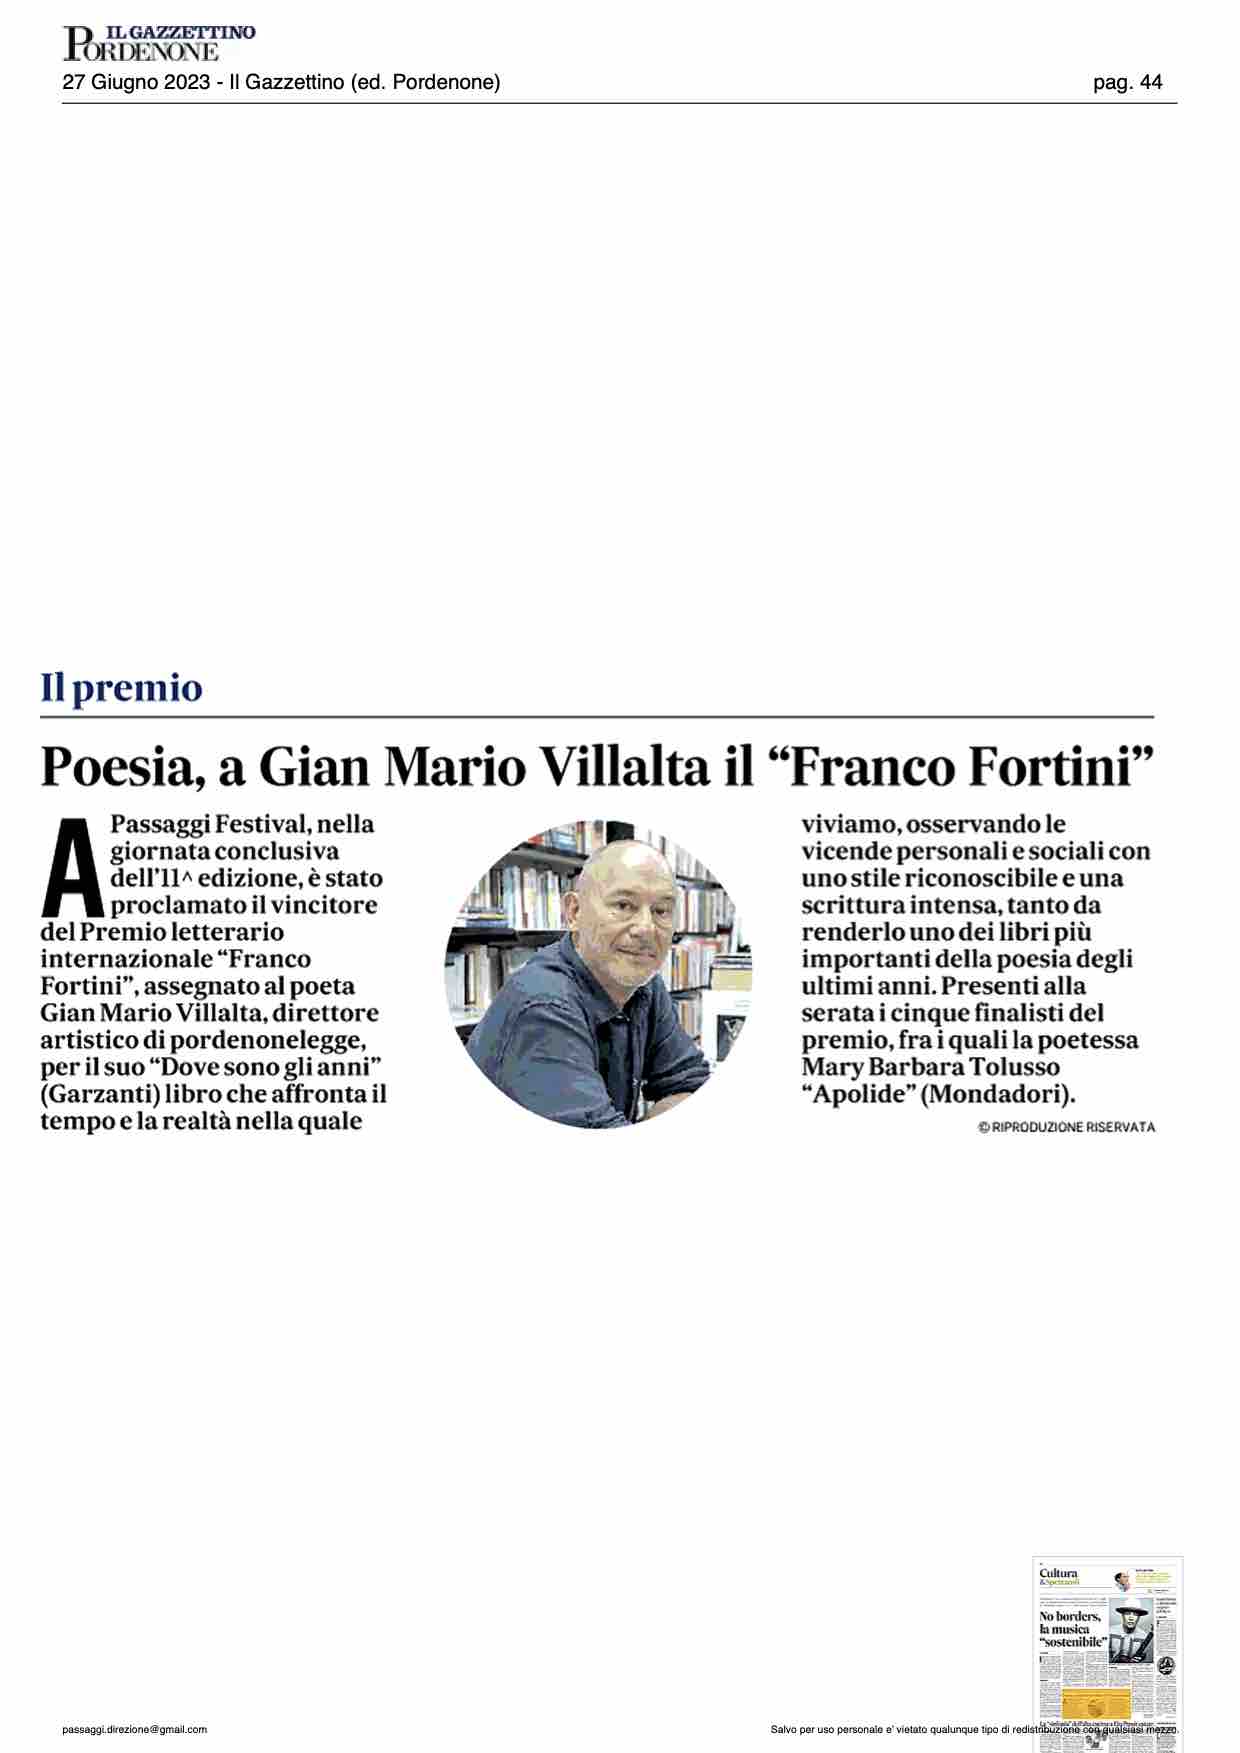 Il Gazzettino – Poesia, a Gian Mario Villalta il “Franco Fortini”